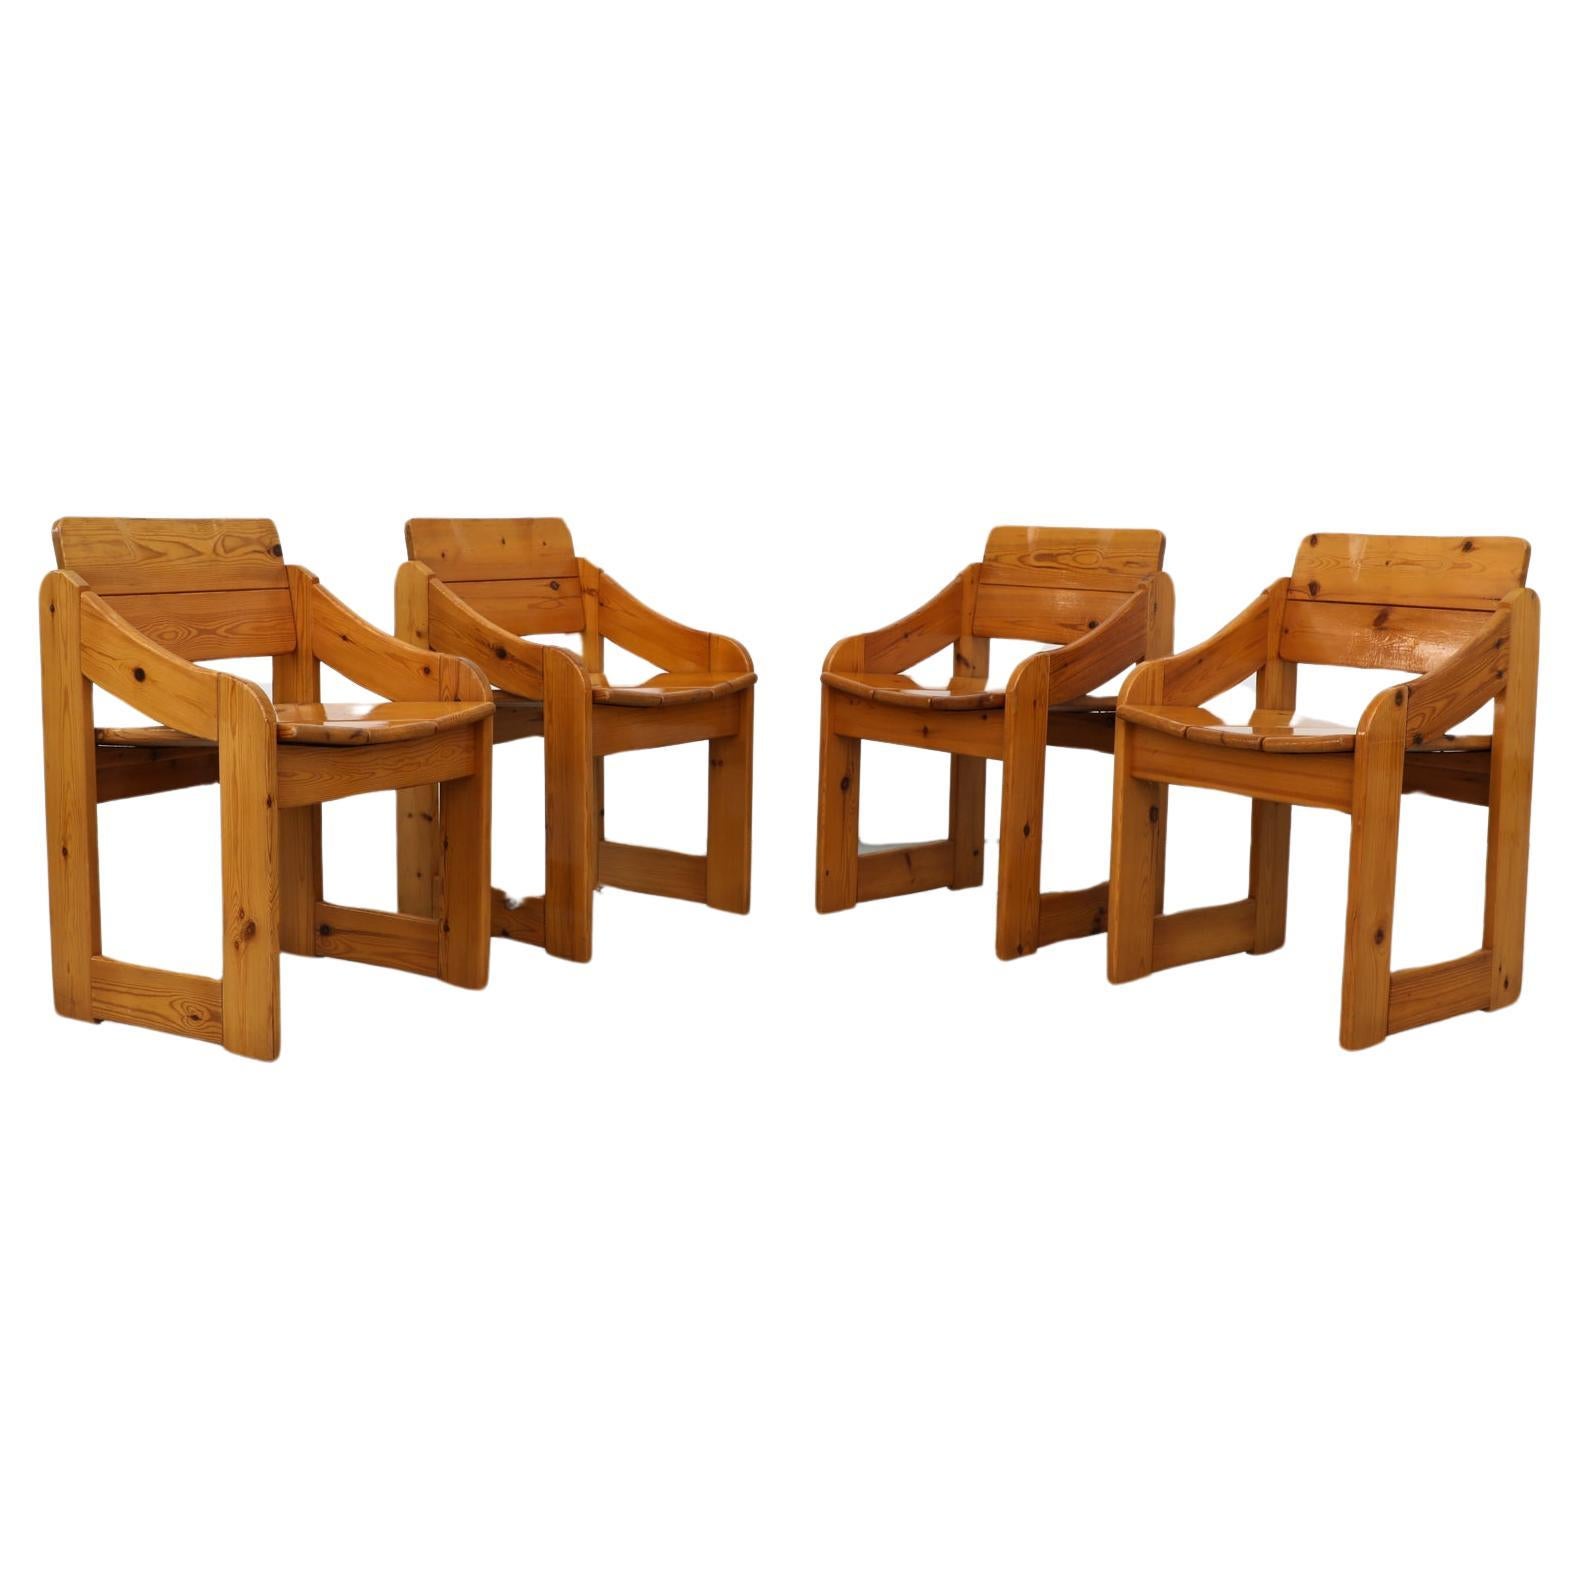 Satz von 4 Esszimmerstühlen aus Kiefernholz mit quadratischem Rahmen, Mod Ate van Apeldoorn-Stil, 1970er Jahre